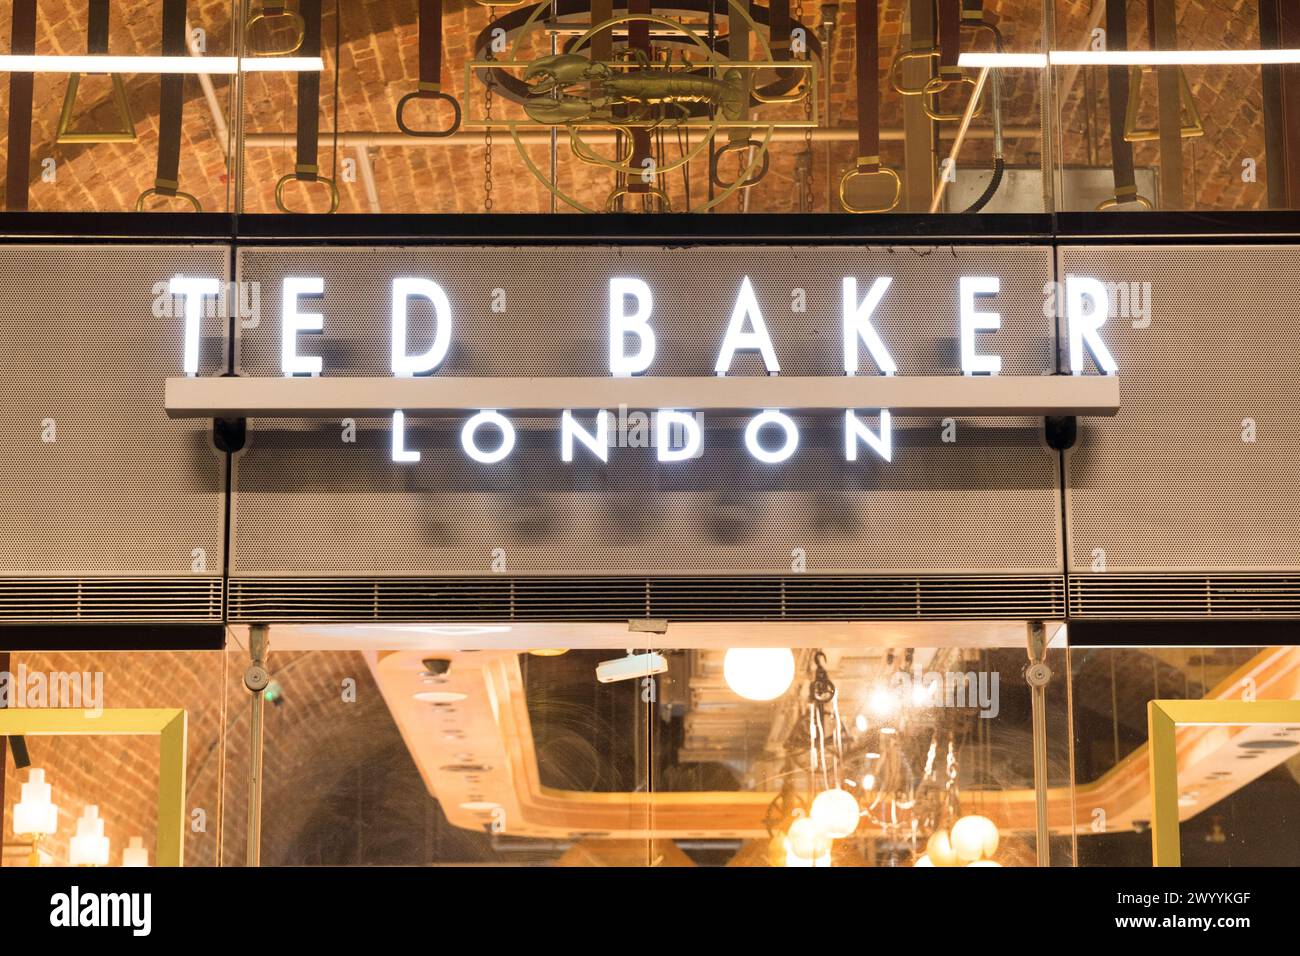 Londres Royaume-Uni , 8 avril 2024. Devant Ted Baker Londres pour fermer 15 magasins en Angleterre, les acheteurs devant Regent Street store Londres Angleterre Royaume-Uni. Crédit : Xiu Bao/Alamy Live News Banque D'Images